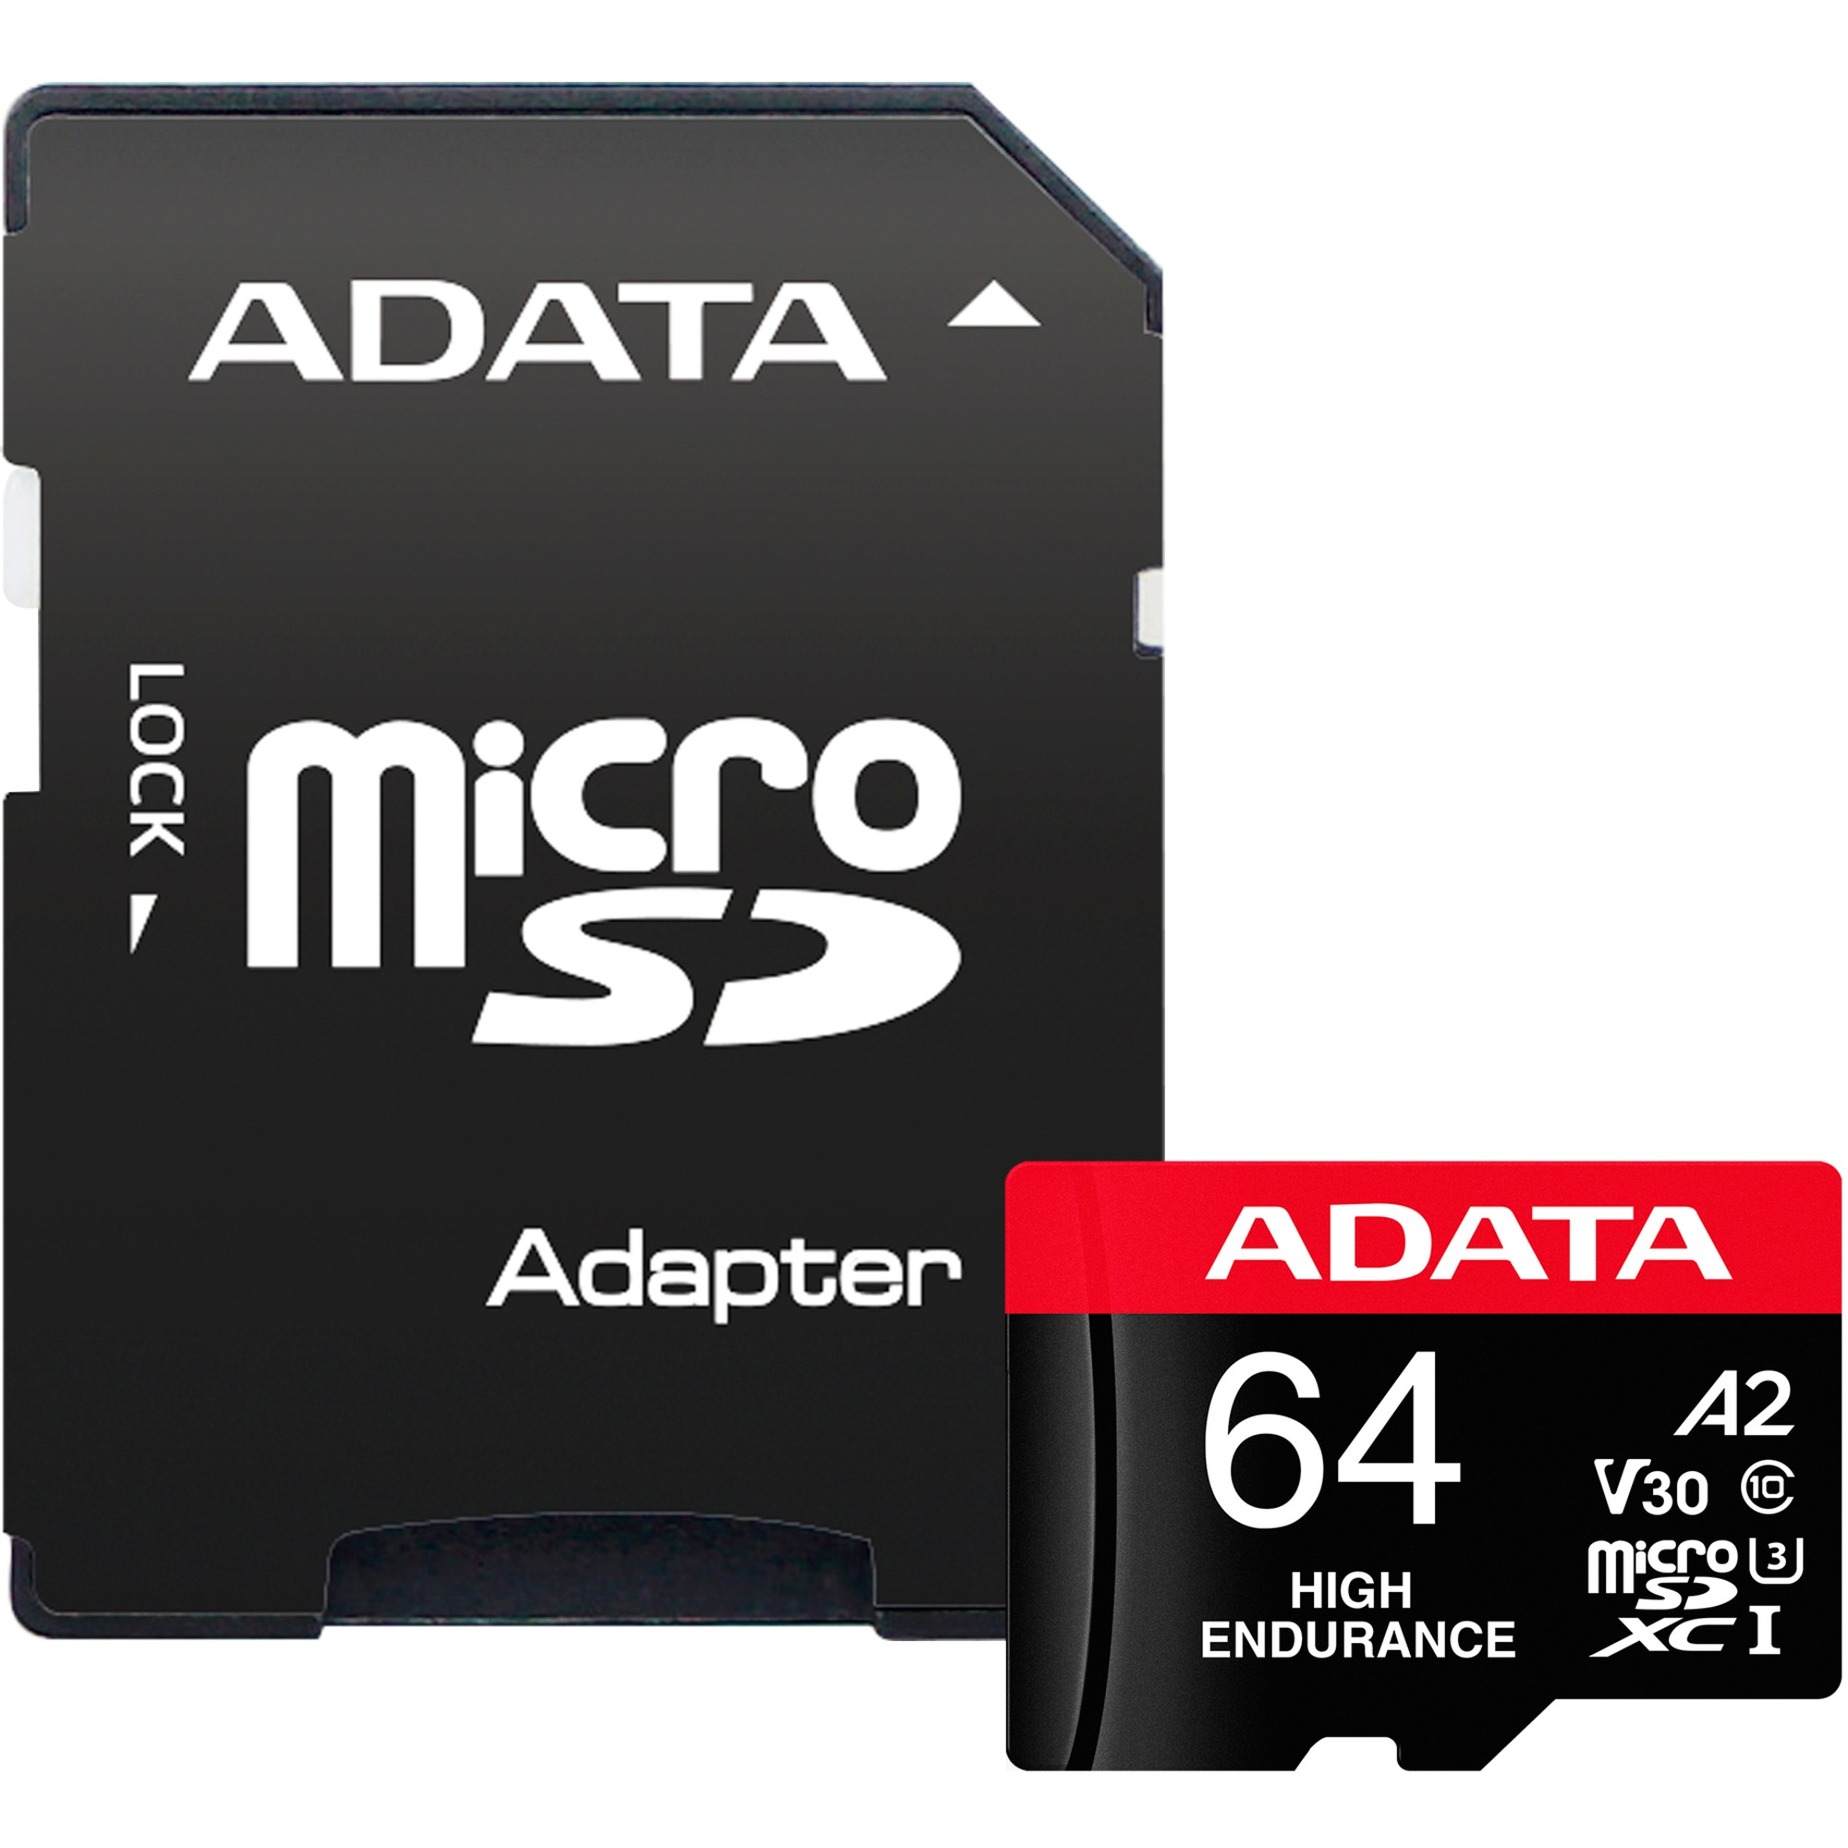 High Endurance 64 GB, Speicherkarte von ADATA